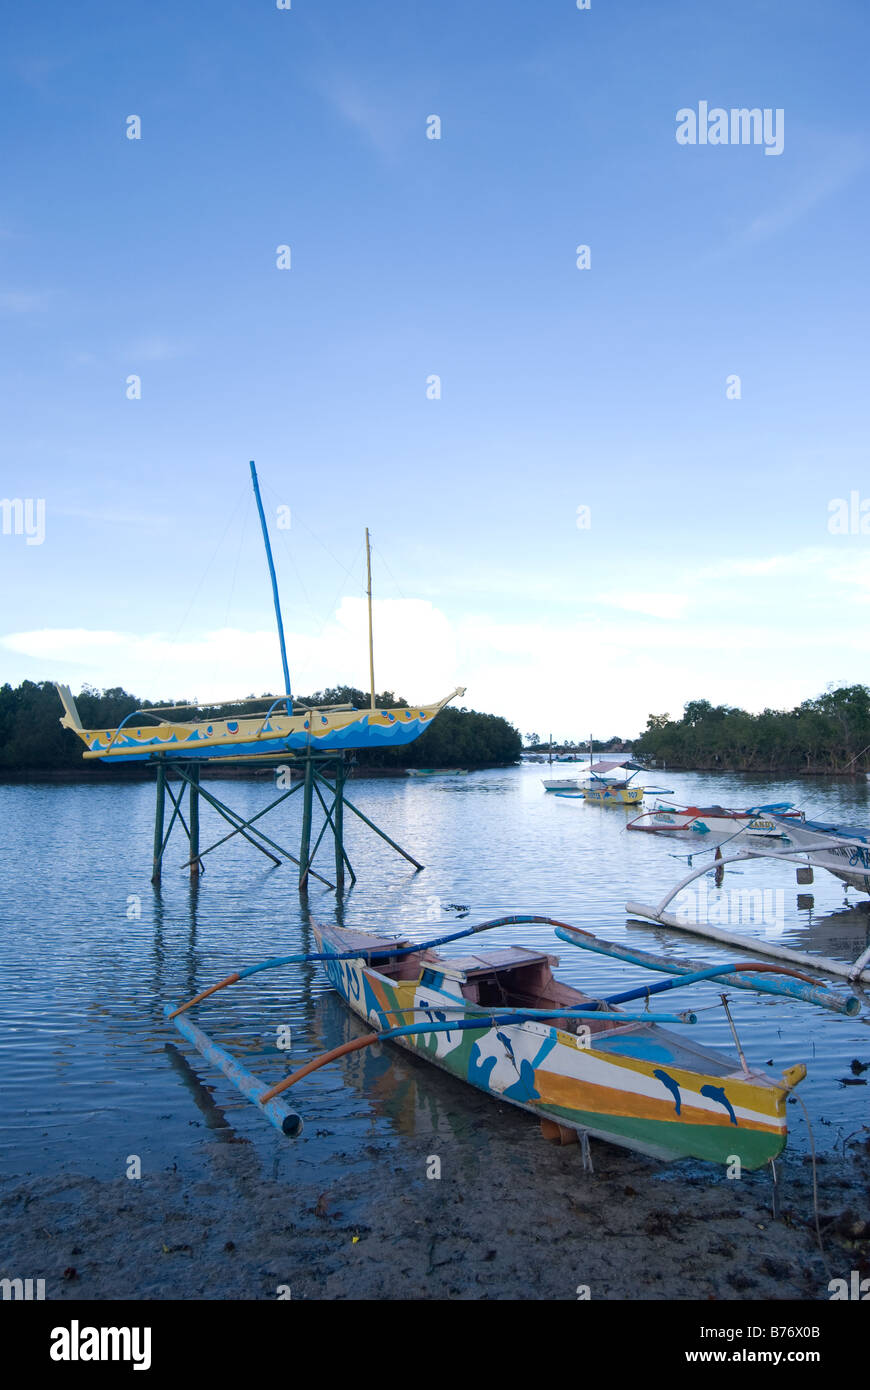 Ausleger Angelboote/Fischerboote auf hölzernen Stelzen, Magellan Bay, Mactan Island, Cebu, Visayas, Philippinen Stockfoto